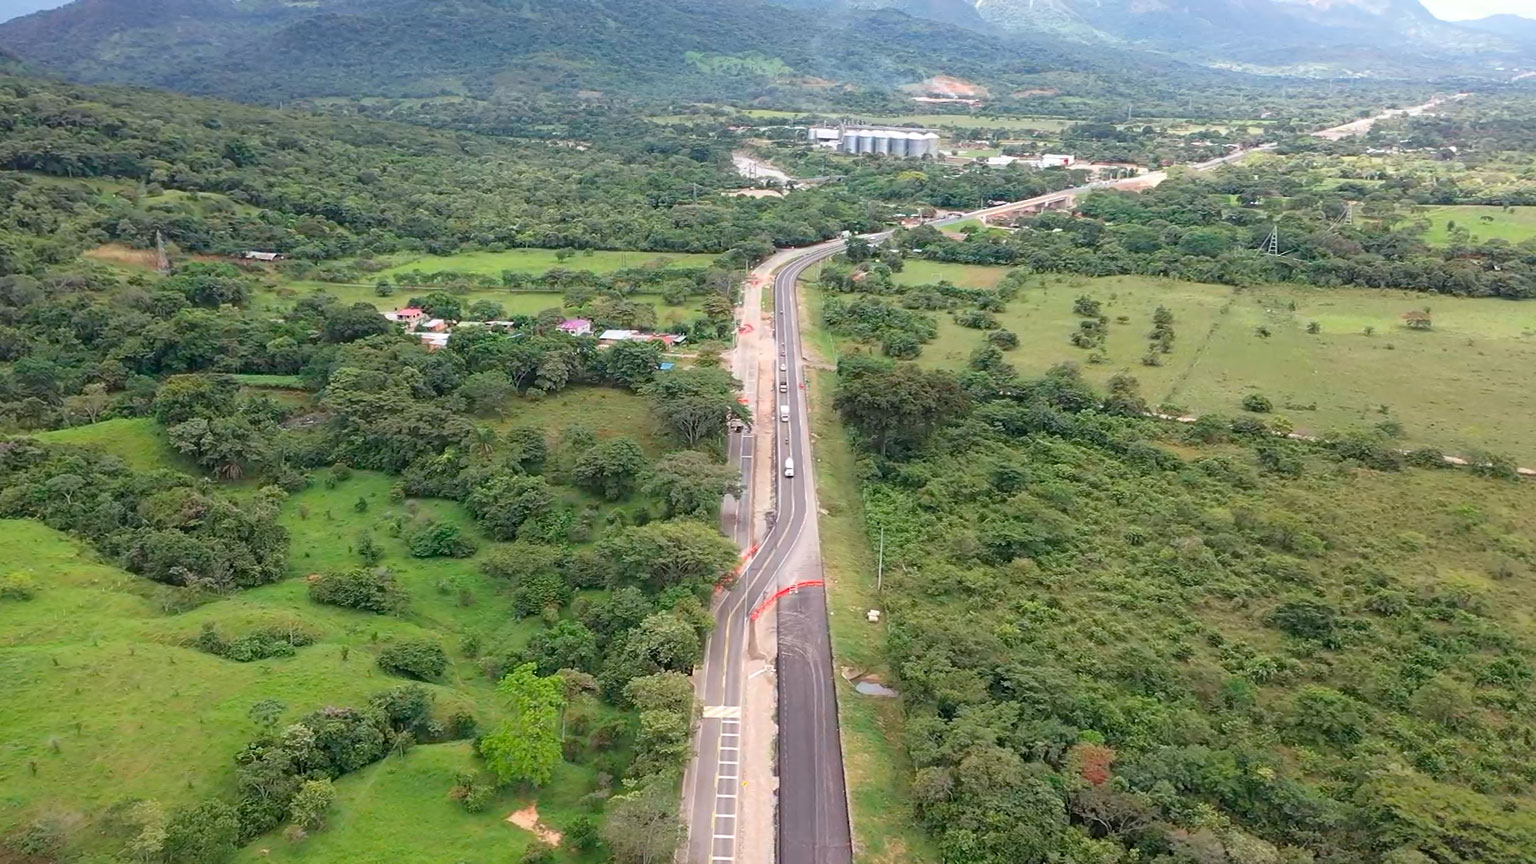 Yopal, 07 de diciembre de 2020. Con el fin de continuar con las obras de ampliación de la vía existente entre Aguazul y Yopal, a partir del 9 de diciembre de 2020 los vehículos que transiten por el sector La Guafilla, entre el km 92+400 y el km 94+400 de la Ruta Nacional 6512, harán […]